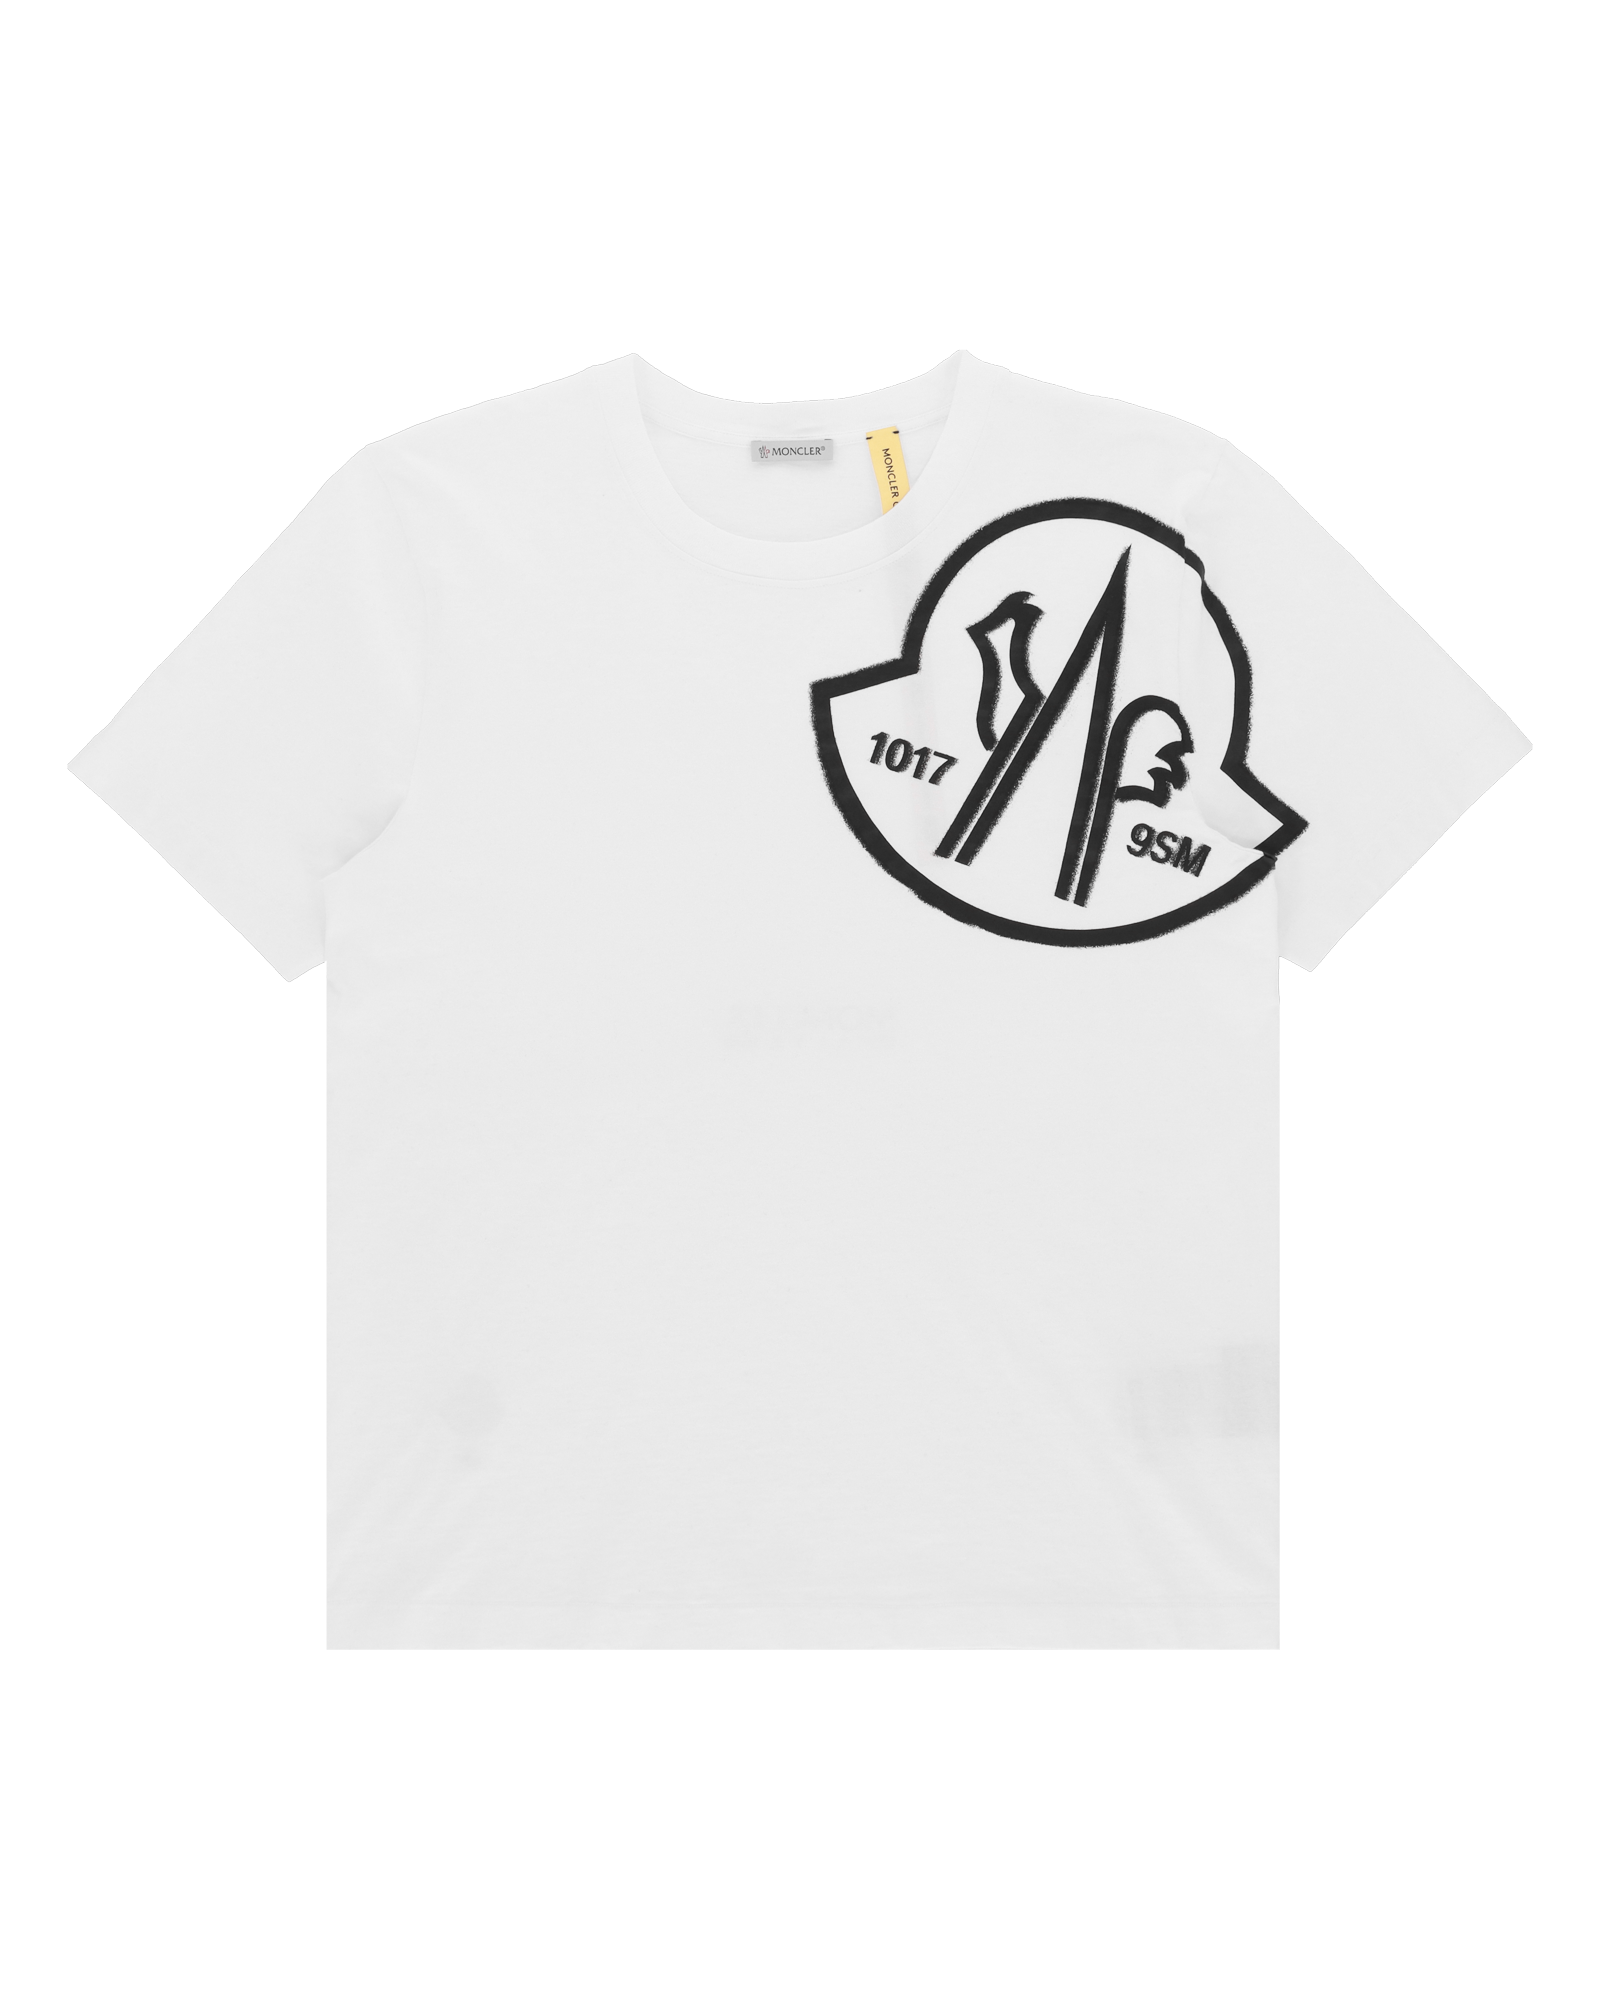 Moncler Cotton Logo Print T-Shirt | Harrods US